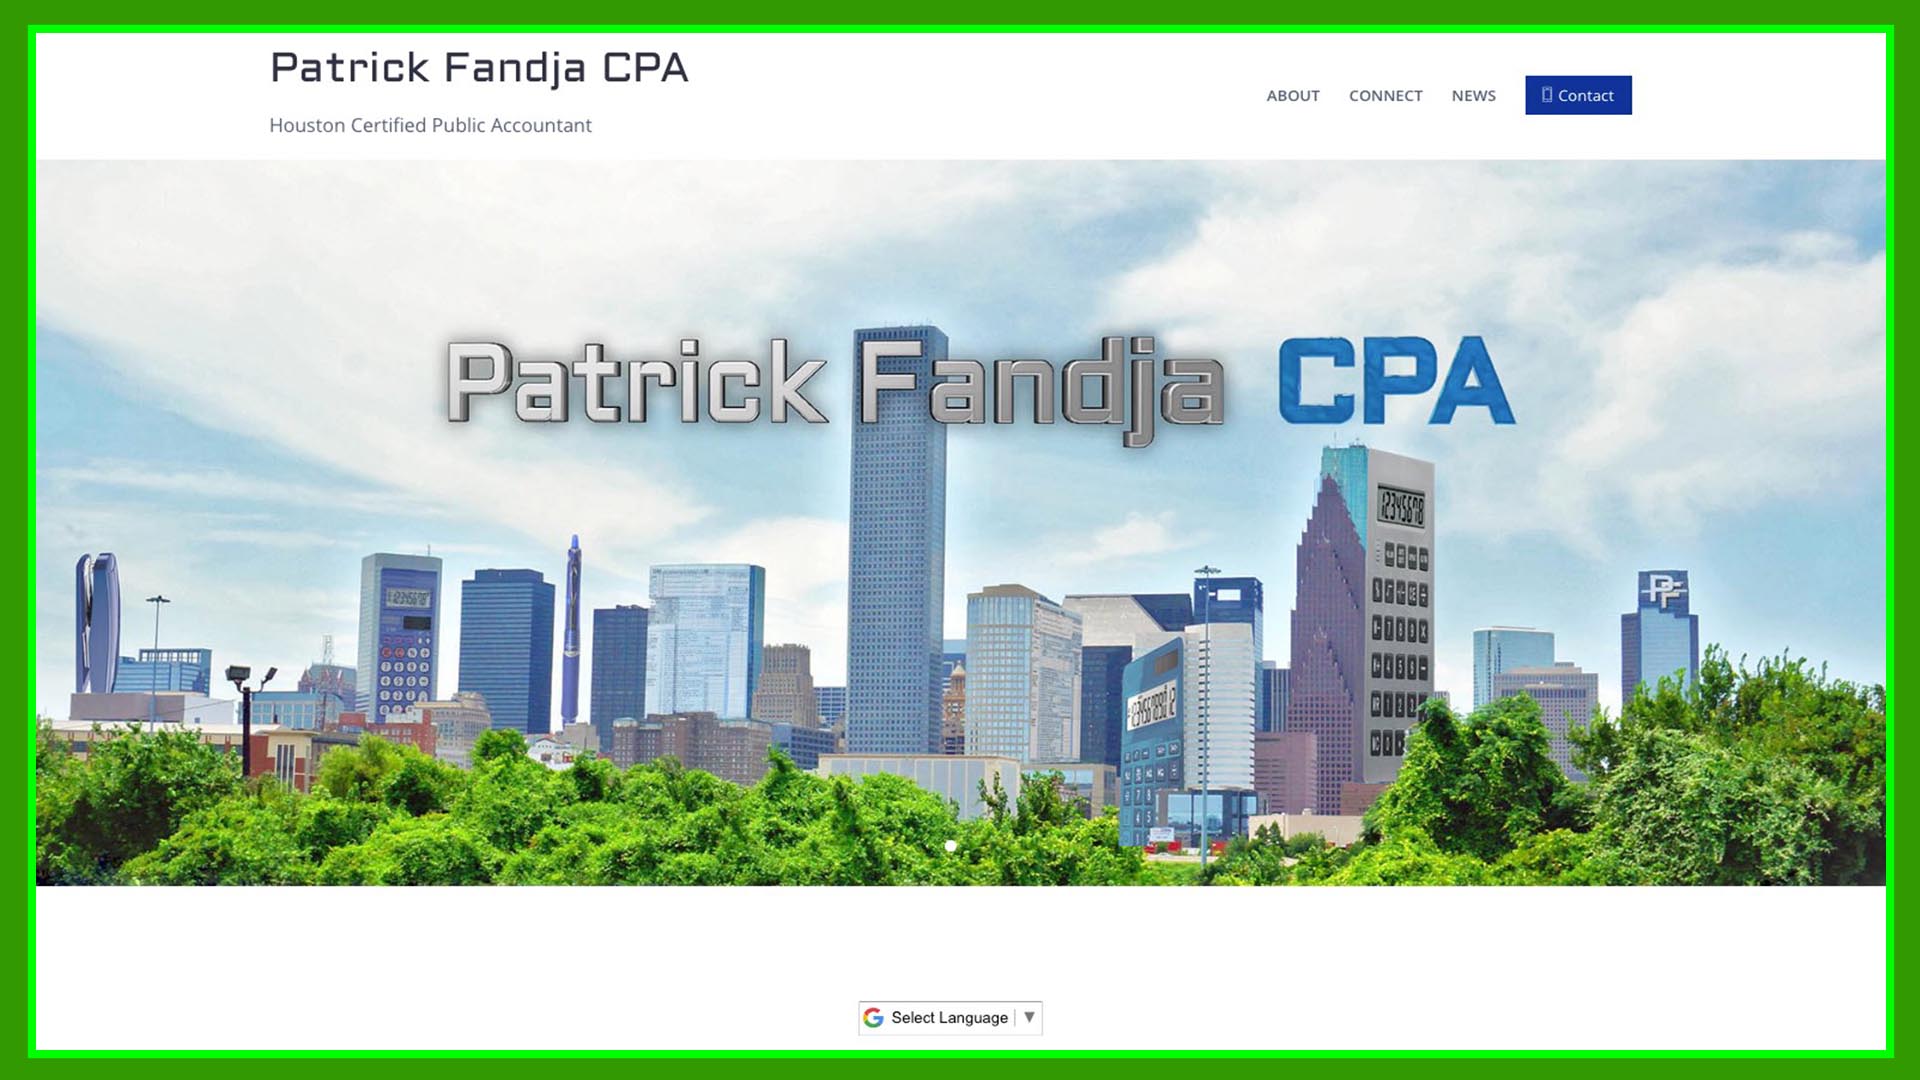 Patrick Fandja CPA